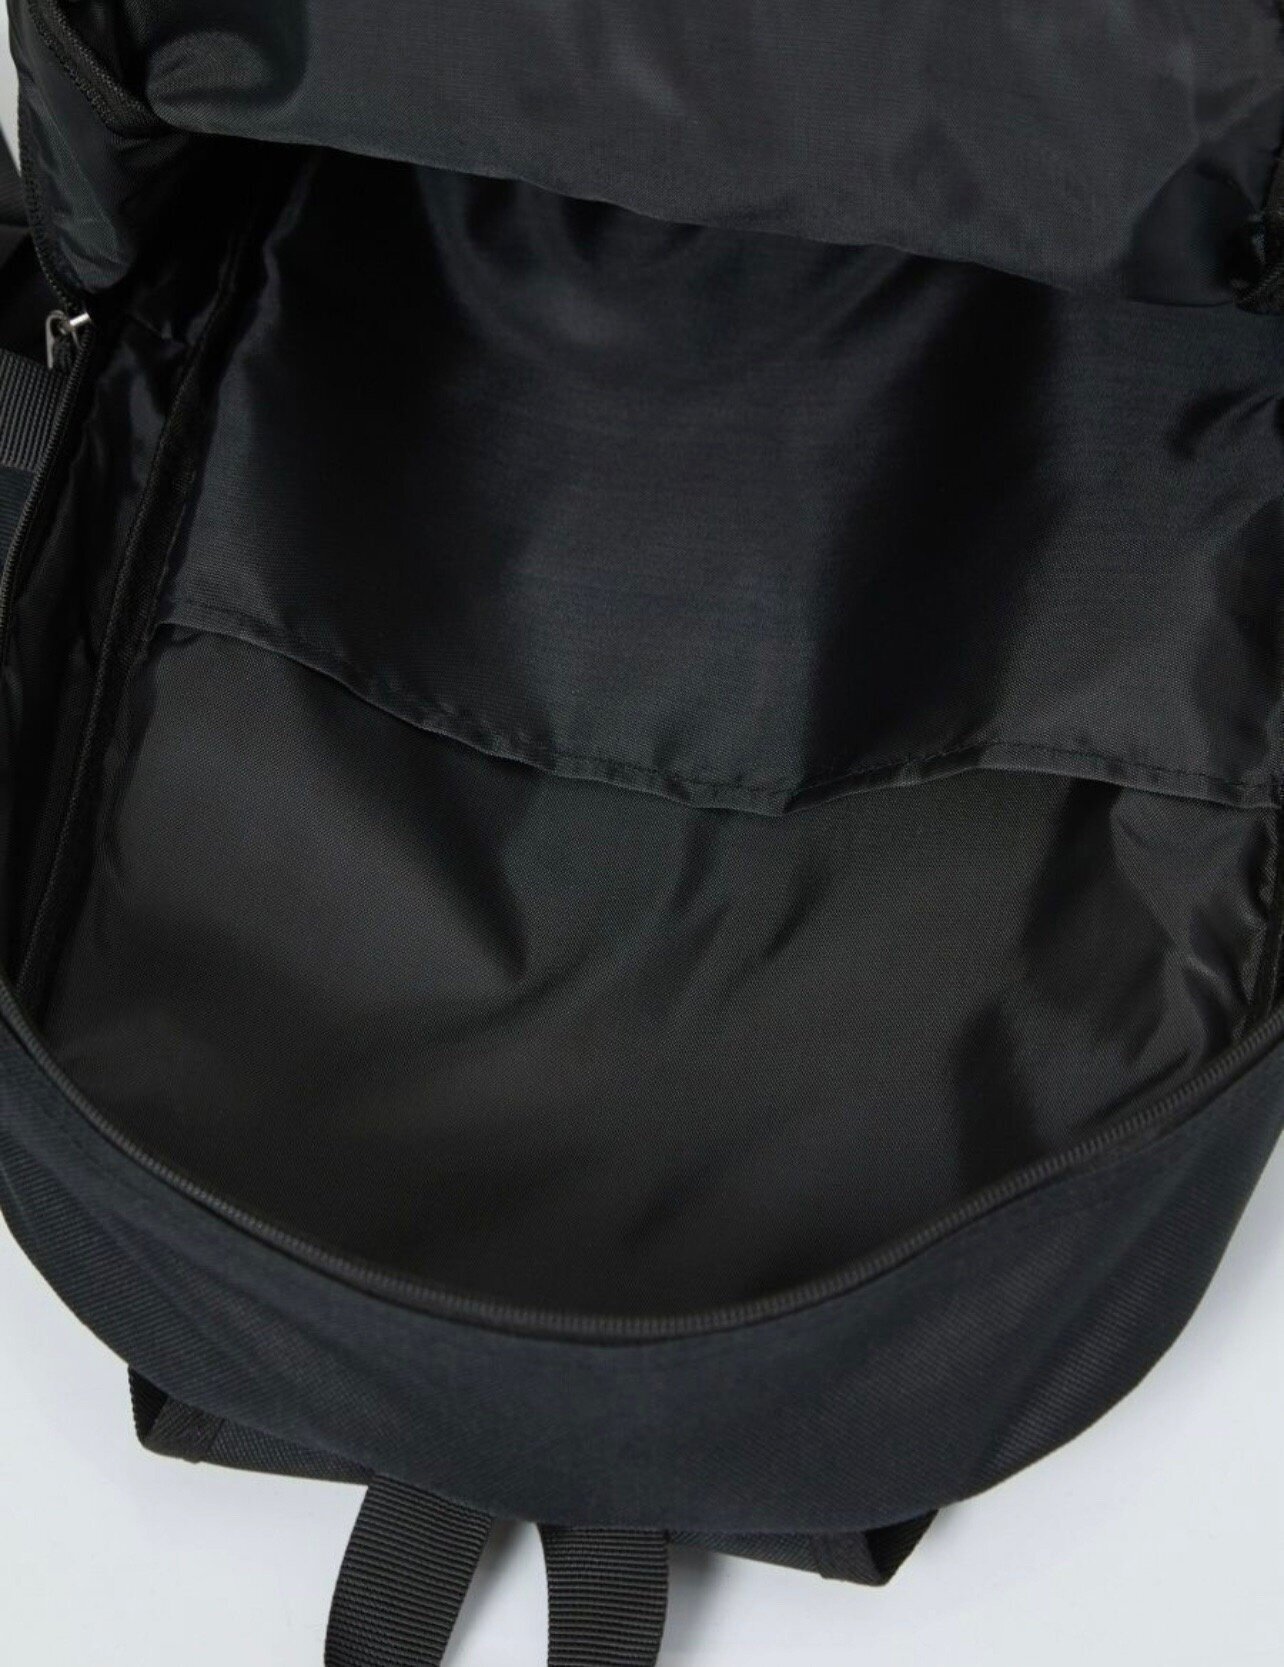 Рюкзак школьный, ранец, туристический, портфель школьный, вместительный универсальный 1 отделение черный